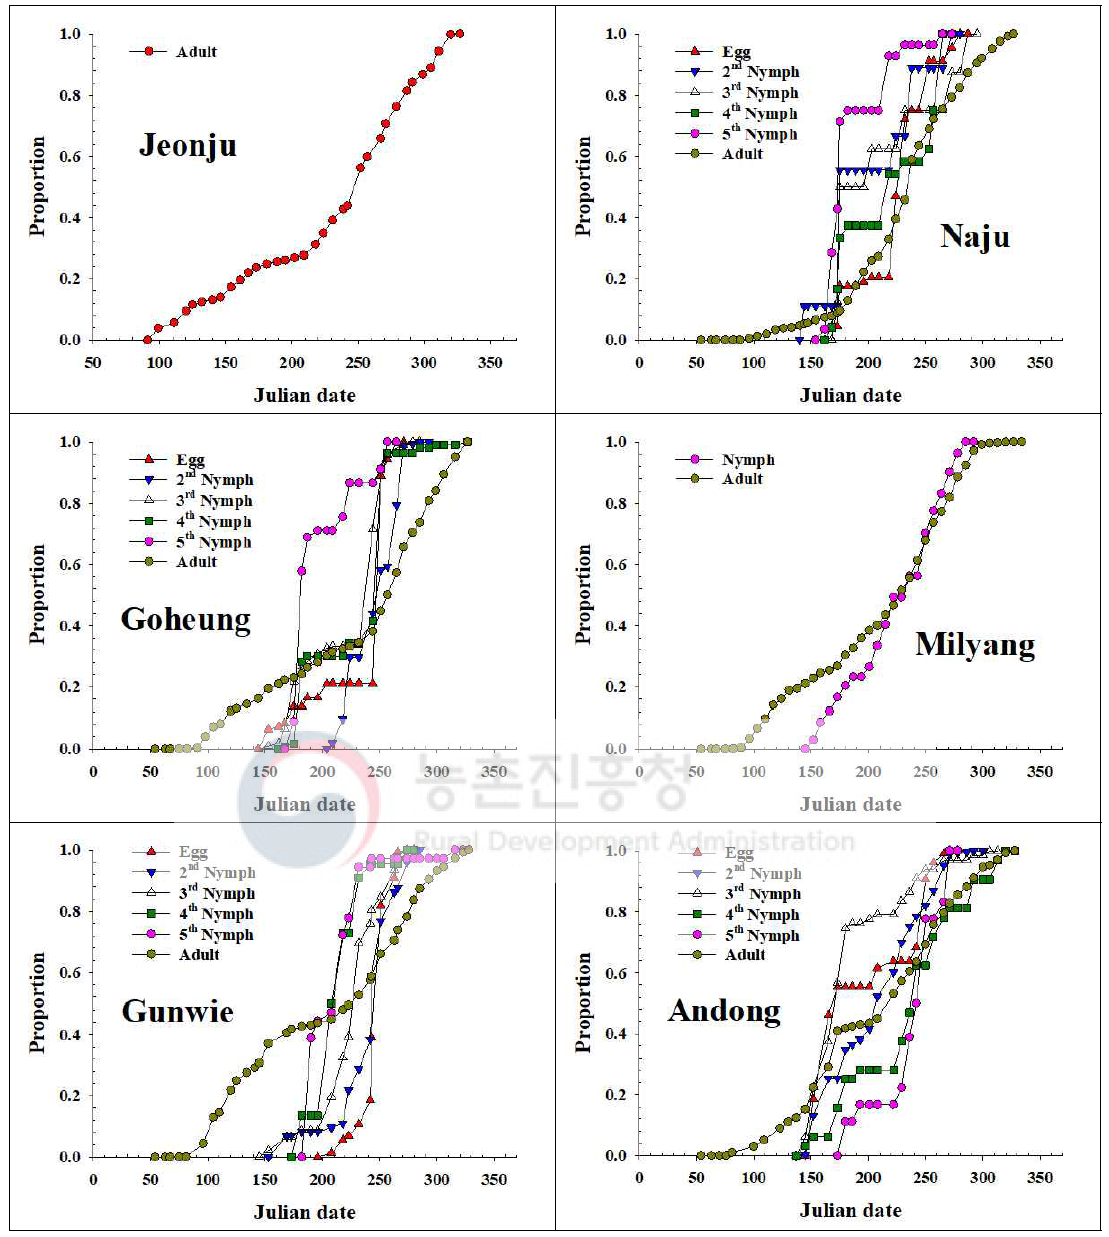 내륙지역 톱다리개미허리노린재 발육단계별 개체수 누적증가 비교(2016)